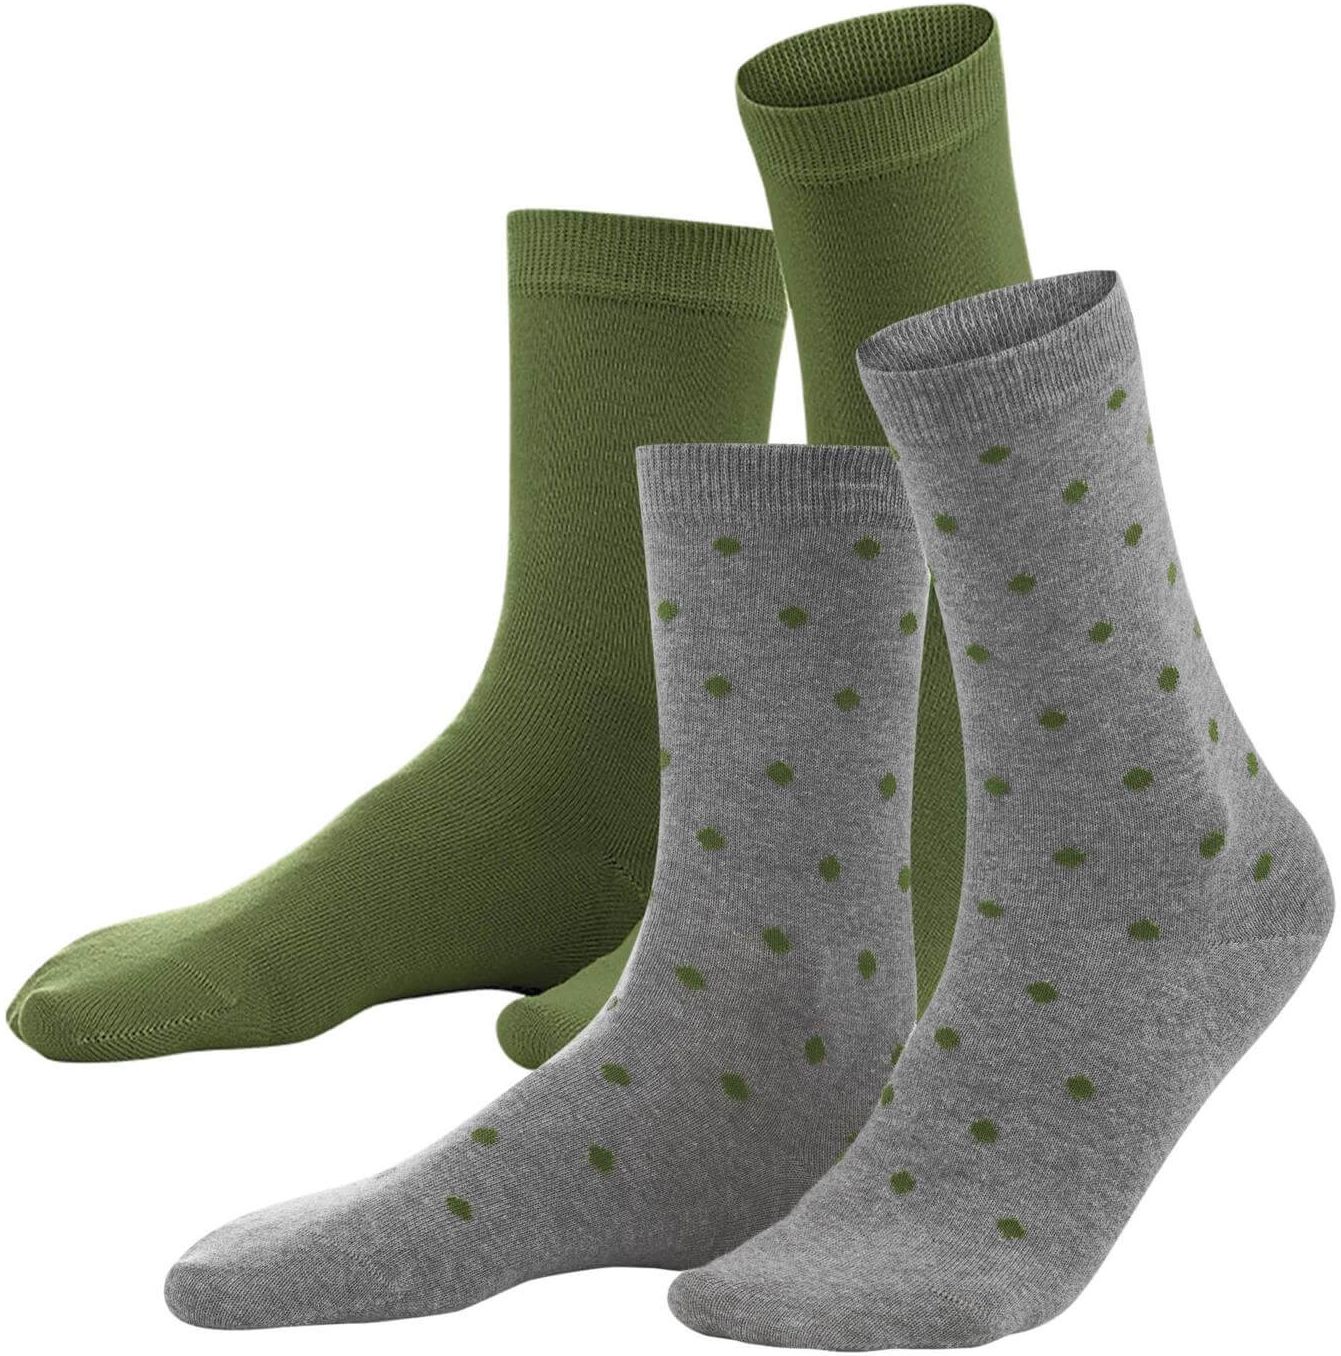 Damen-Socken BETTINA im 2er-Pack cypress dots